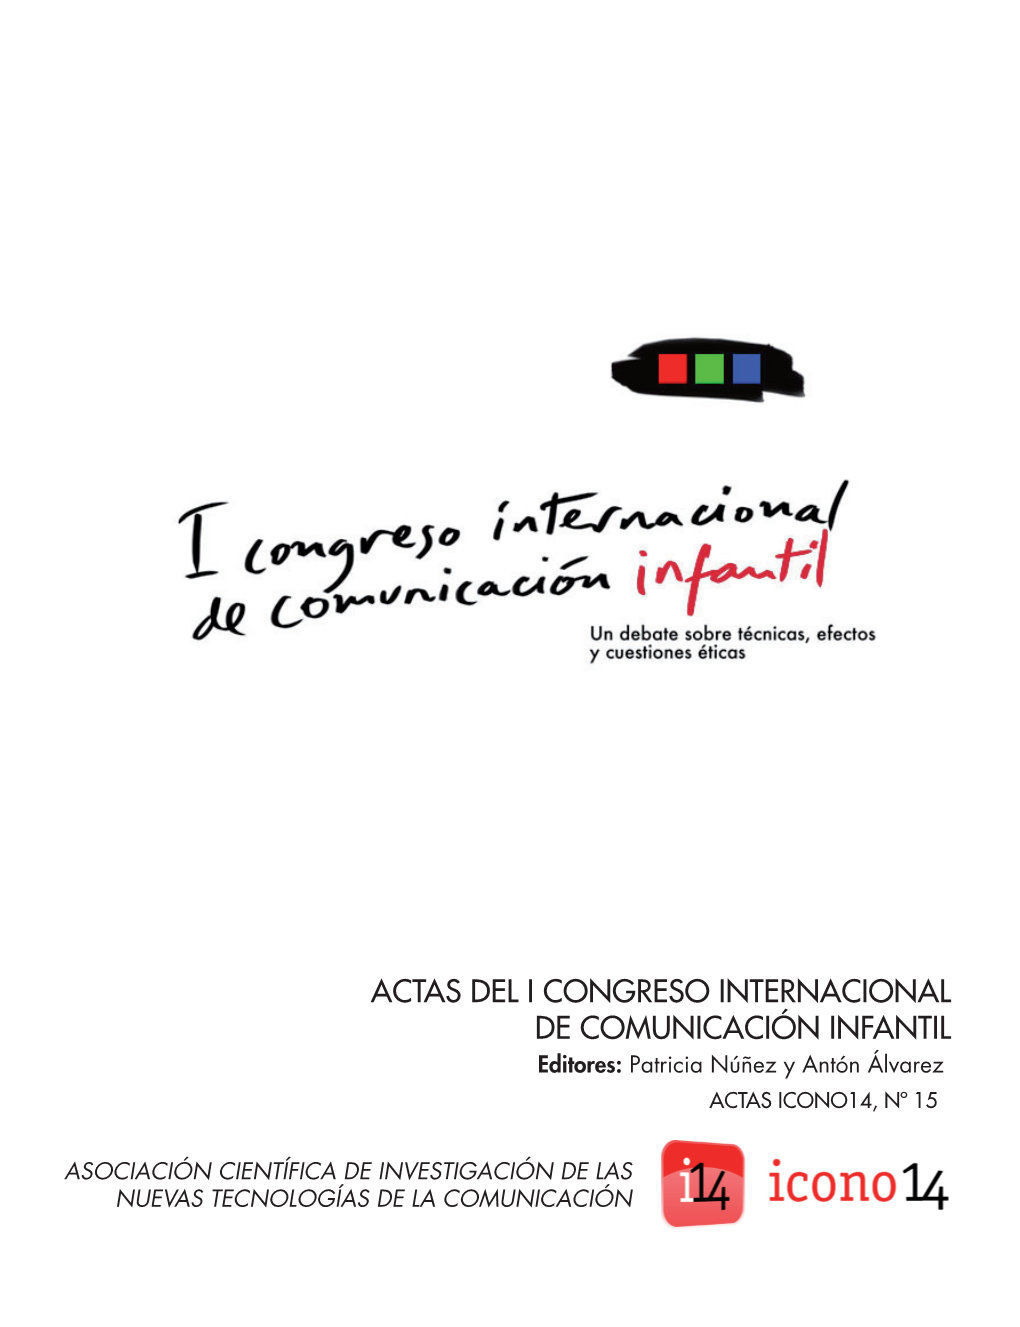 ACTAS DEL I CONGRESO INTERNACIONAL DE COMUNICACIÓN INFANTIL Editores: Patricia Núñez Y Antón Álvarez ACTAS ICONO14, Nº 15